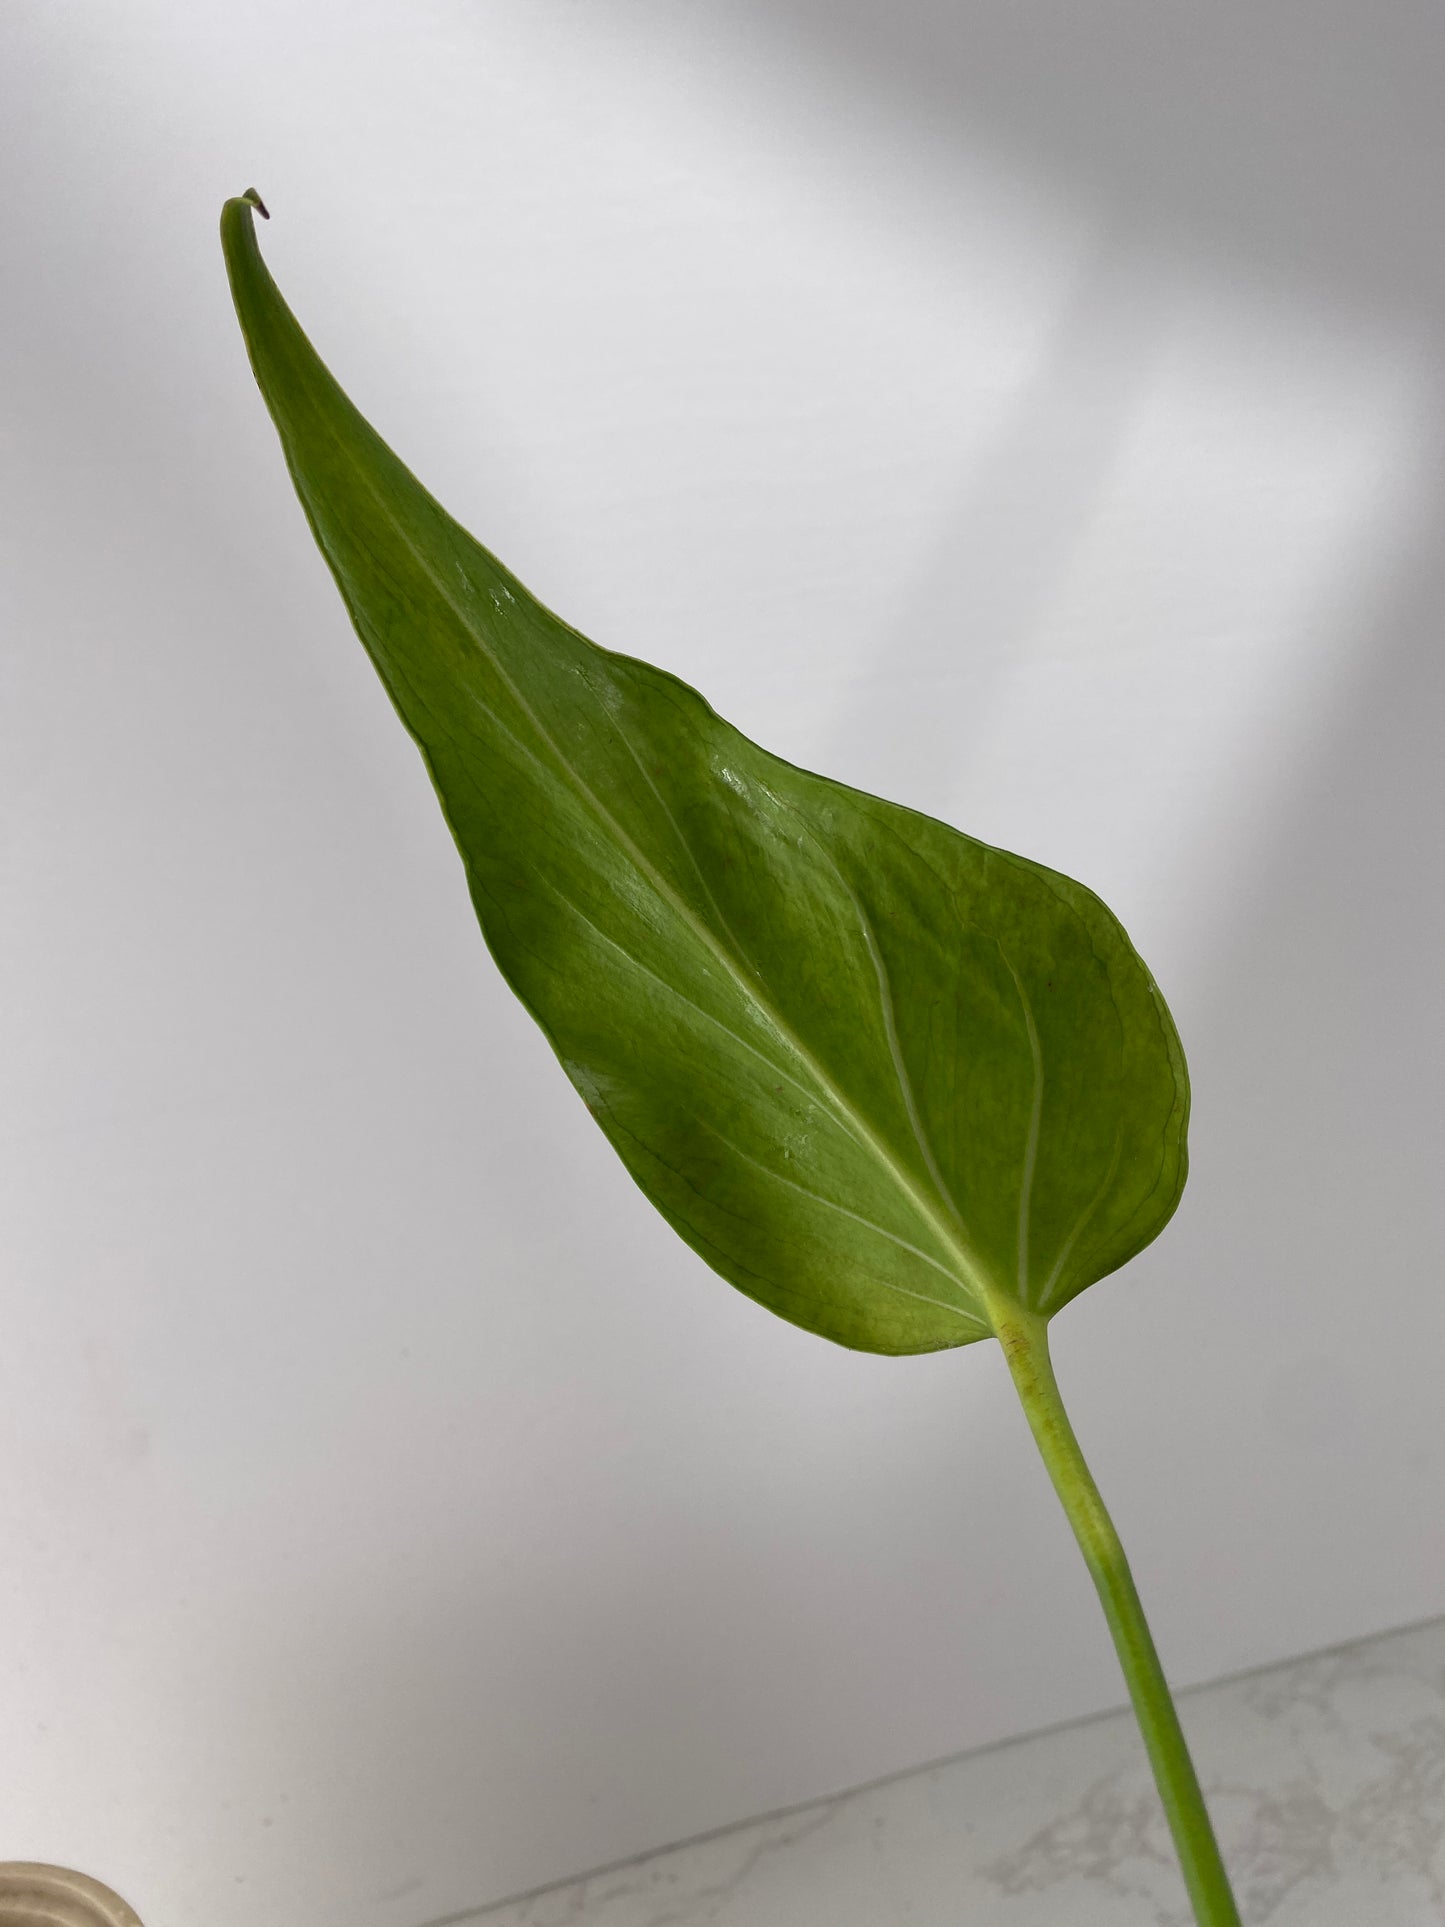 Monstera Burle Marx Flame 1 leaf 1 growing bud rooting